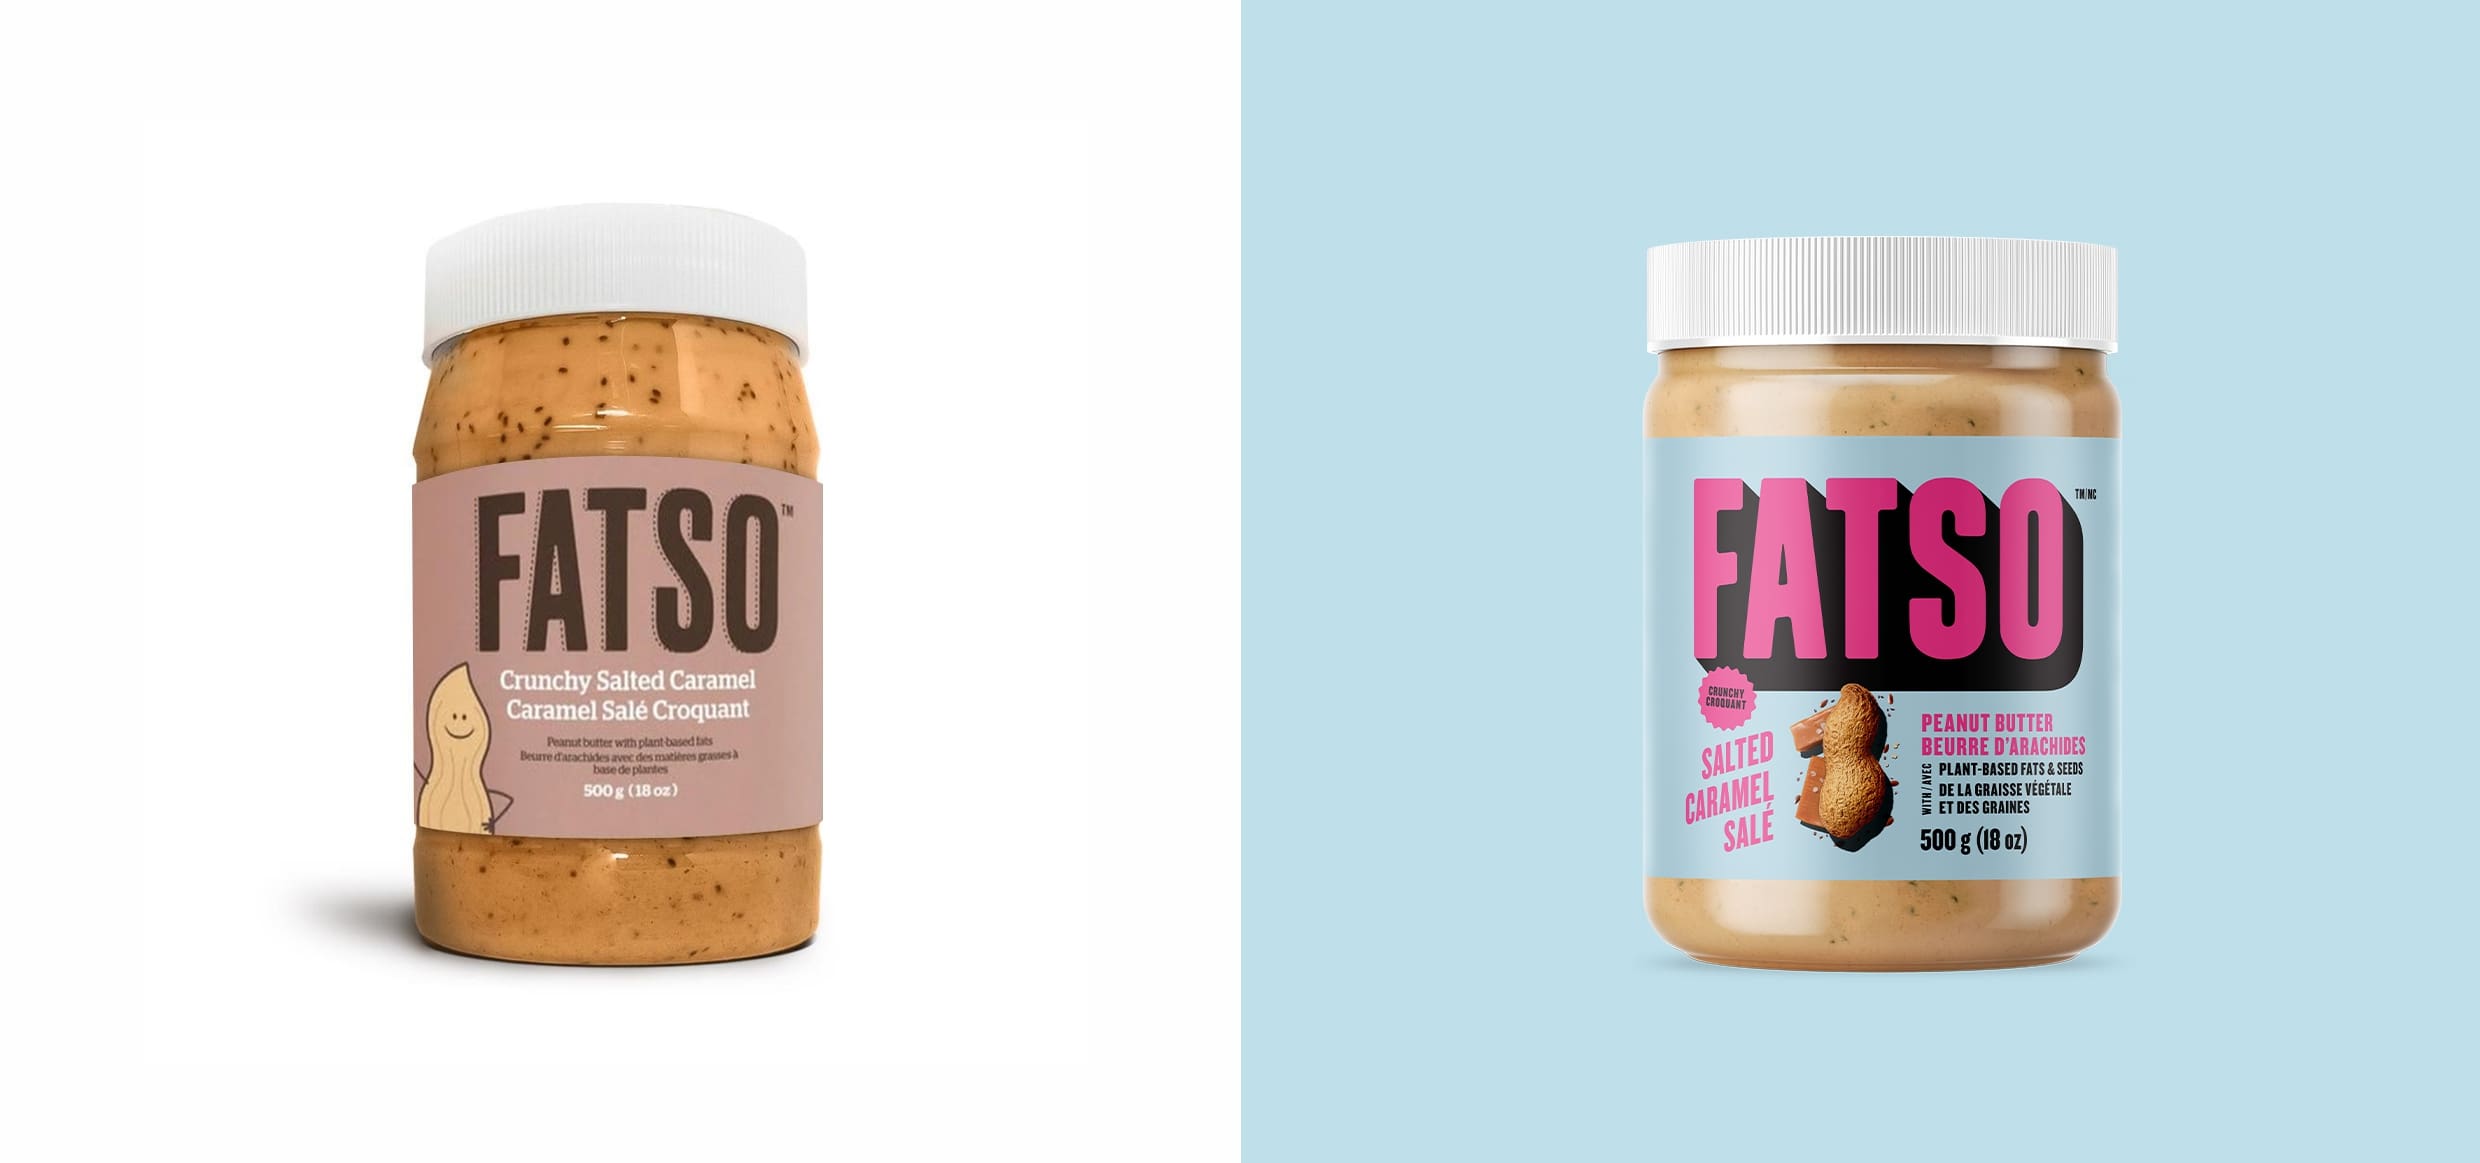 Fatso Peanut Butter Packaging Design